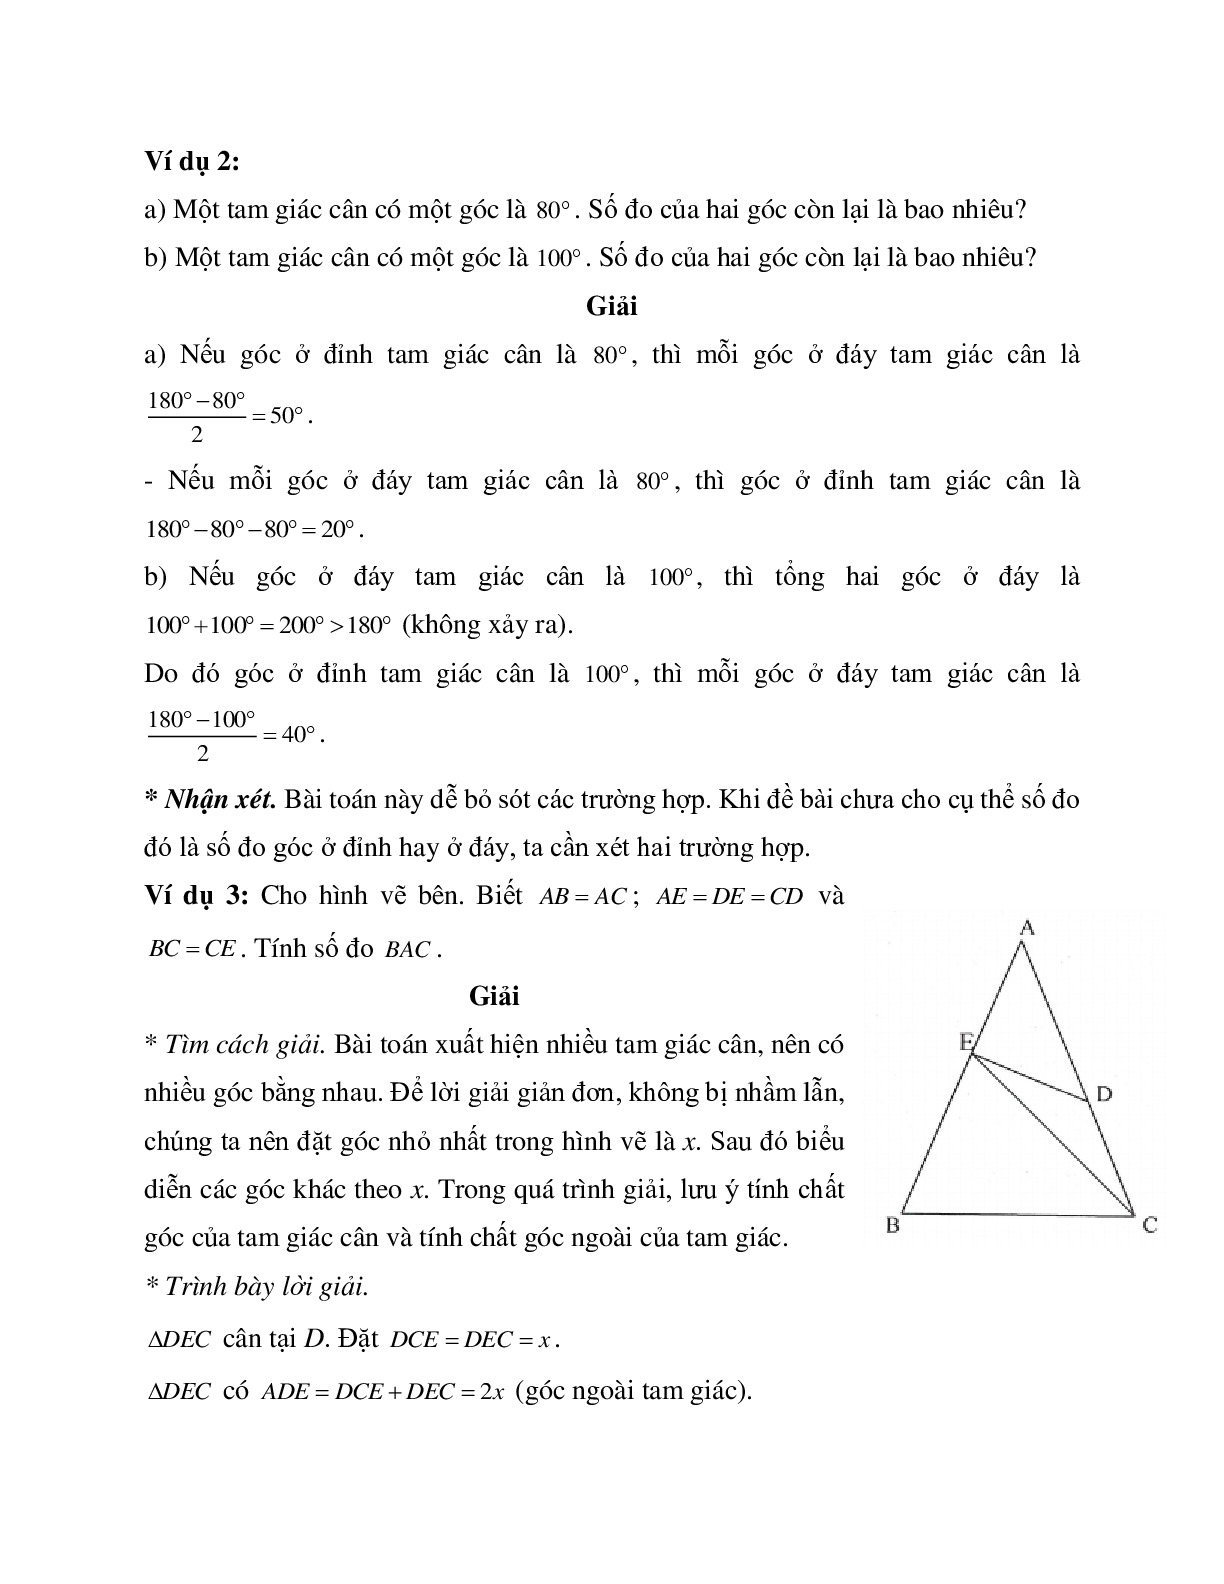 Phương pháp và bài tập về Tam giác cân - Tam giác đều có lời giải (trang 3)